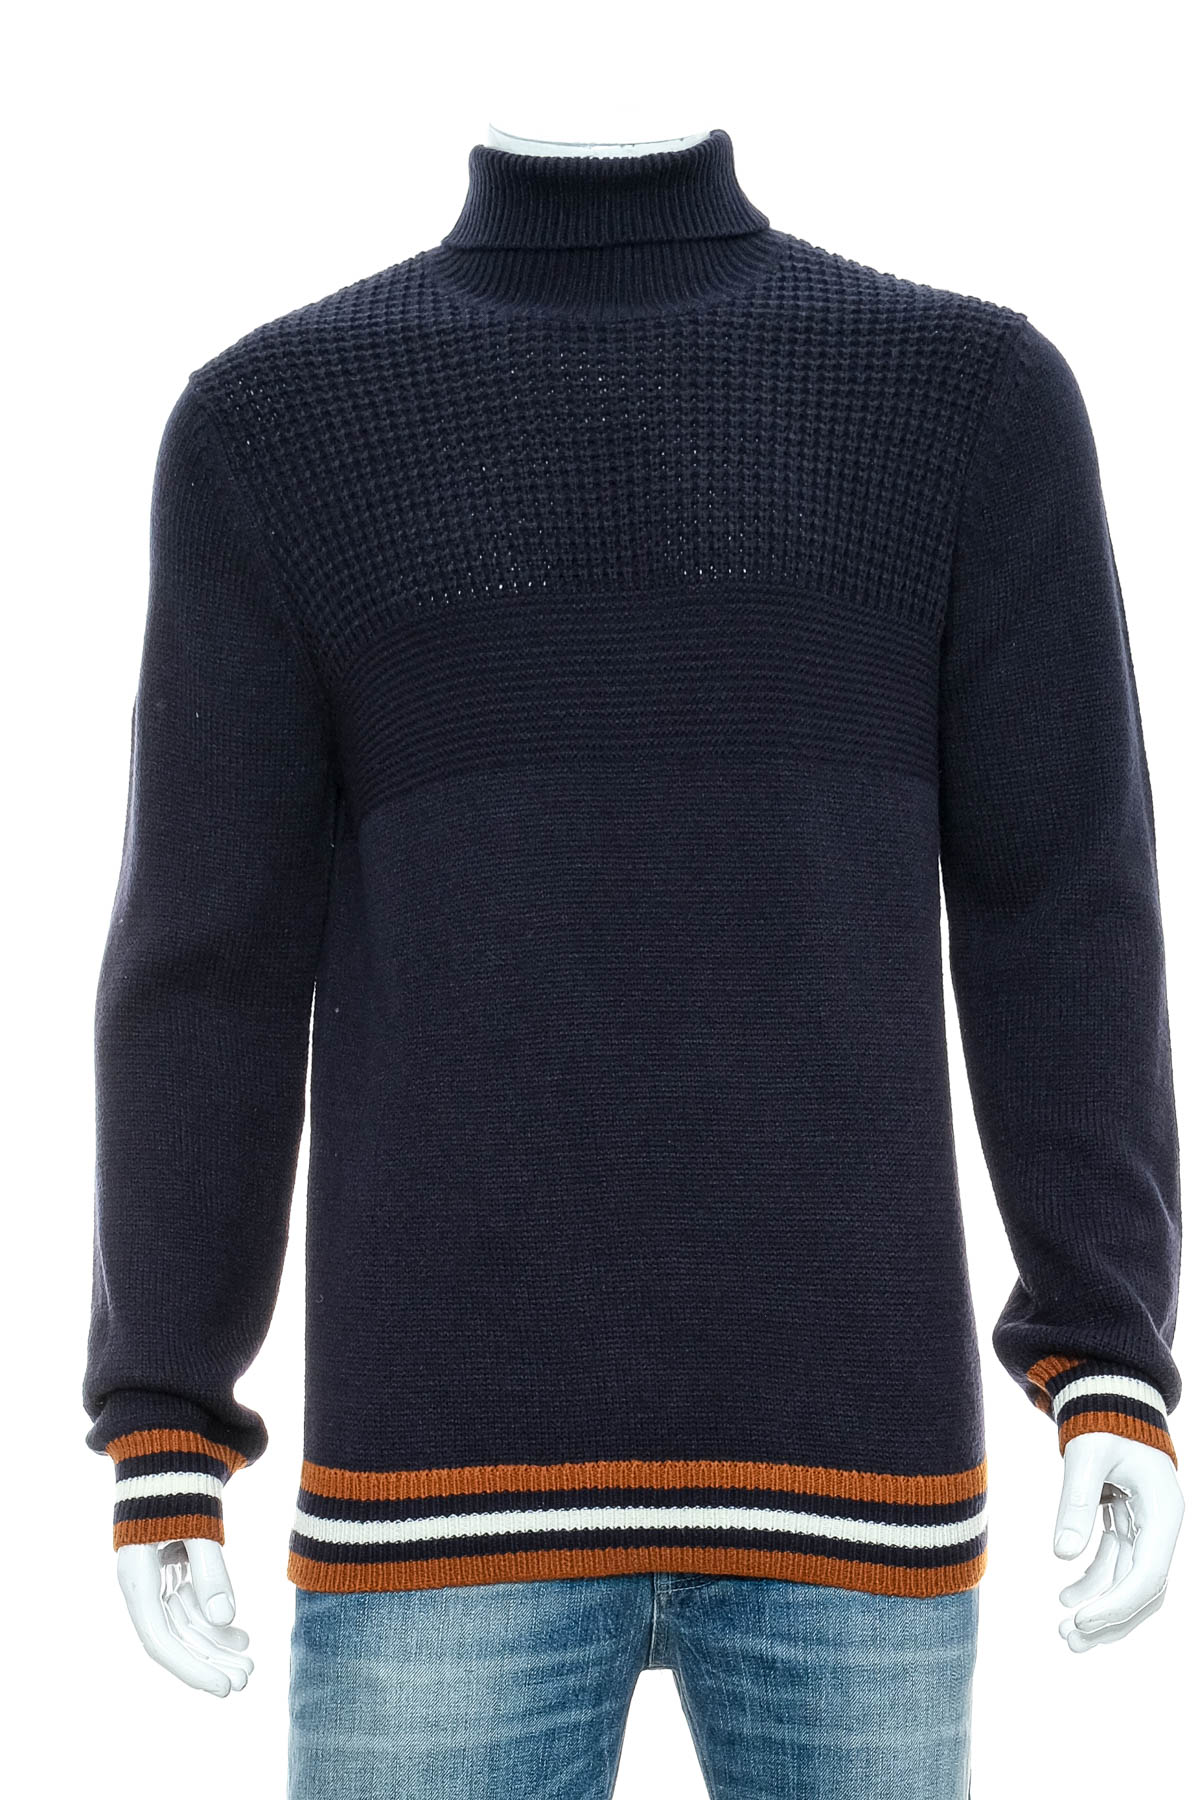 Men's sweater - Ben Sherman - 0